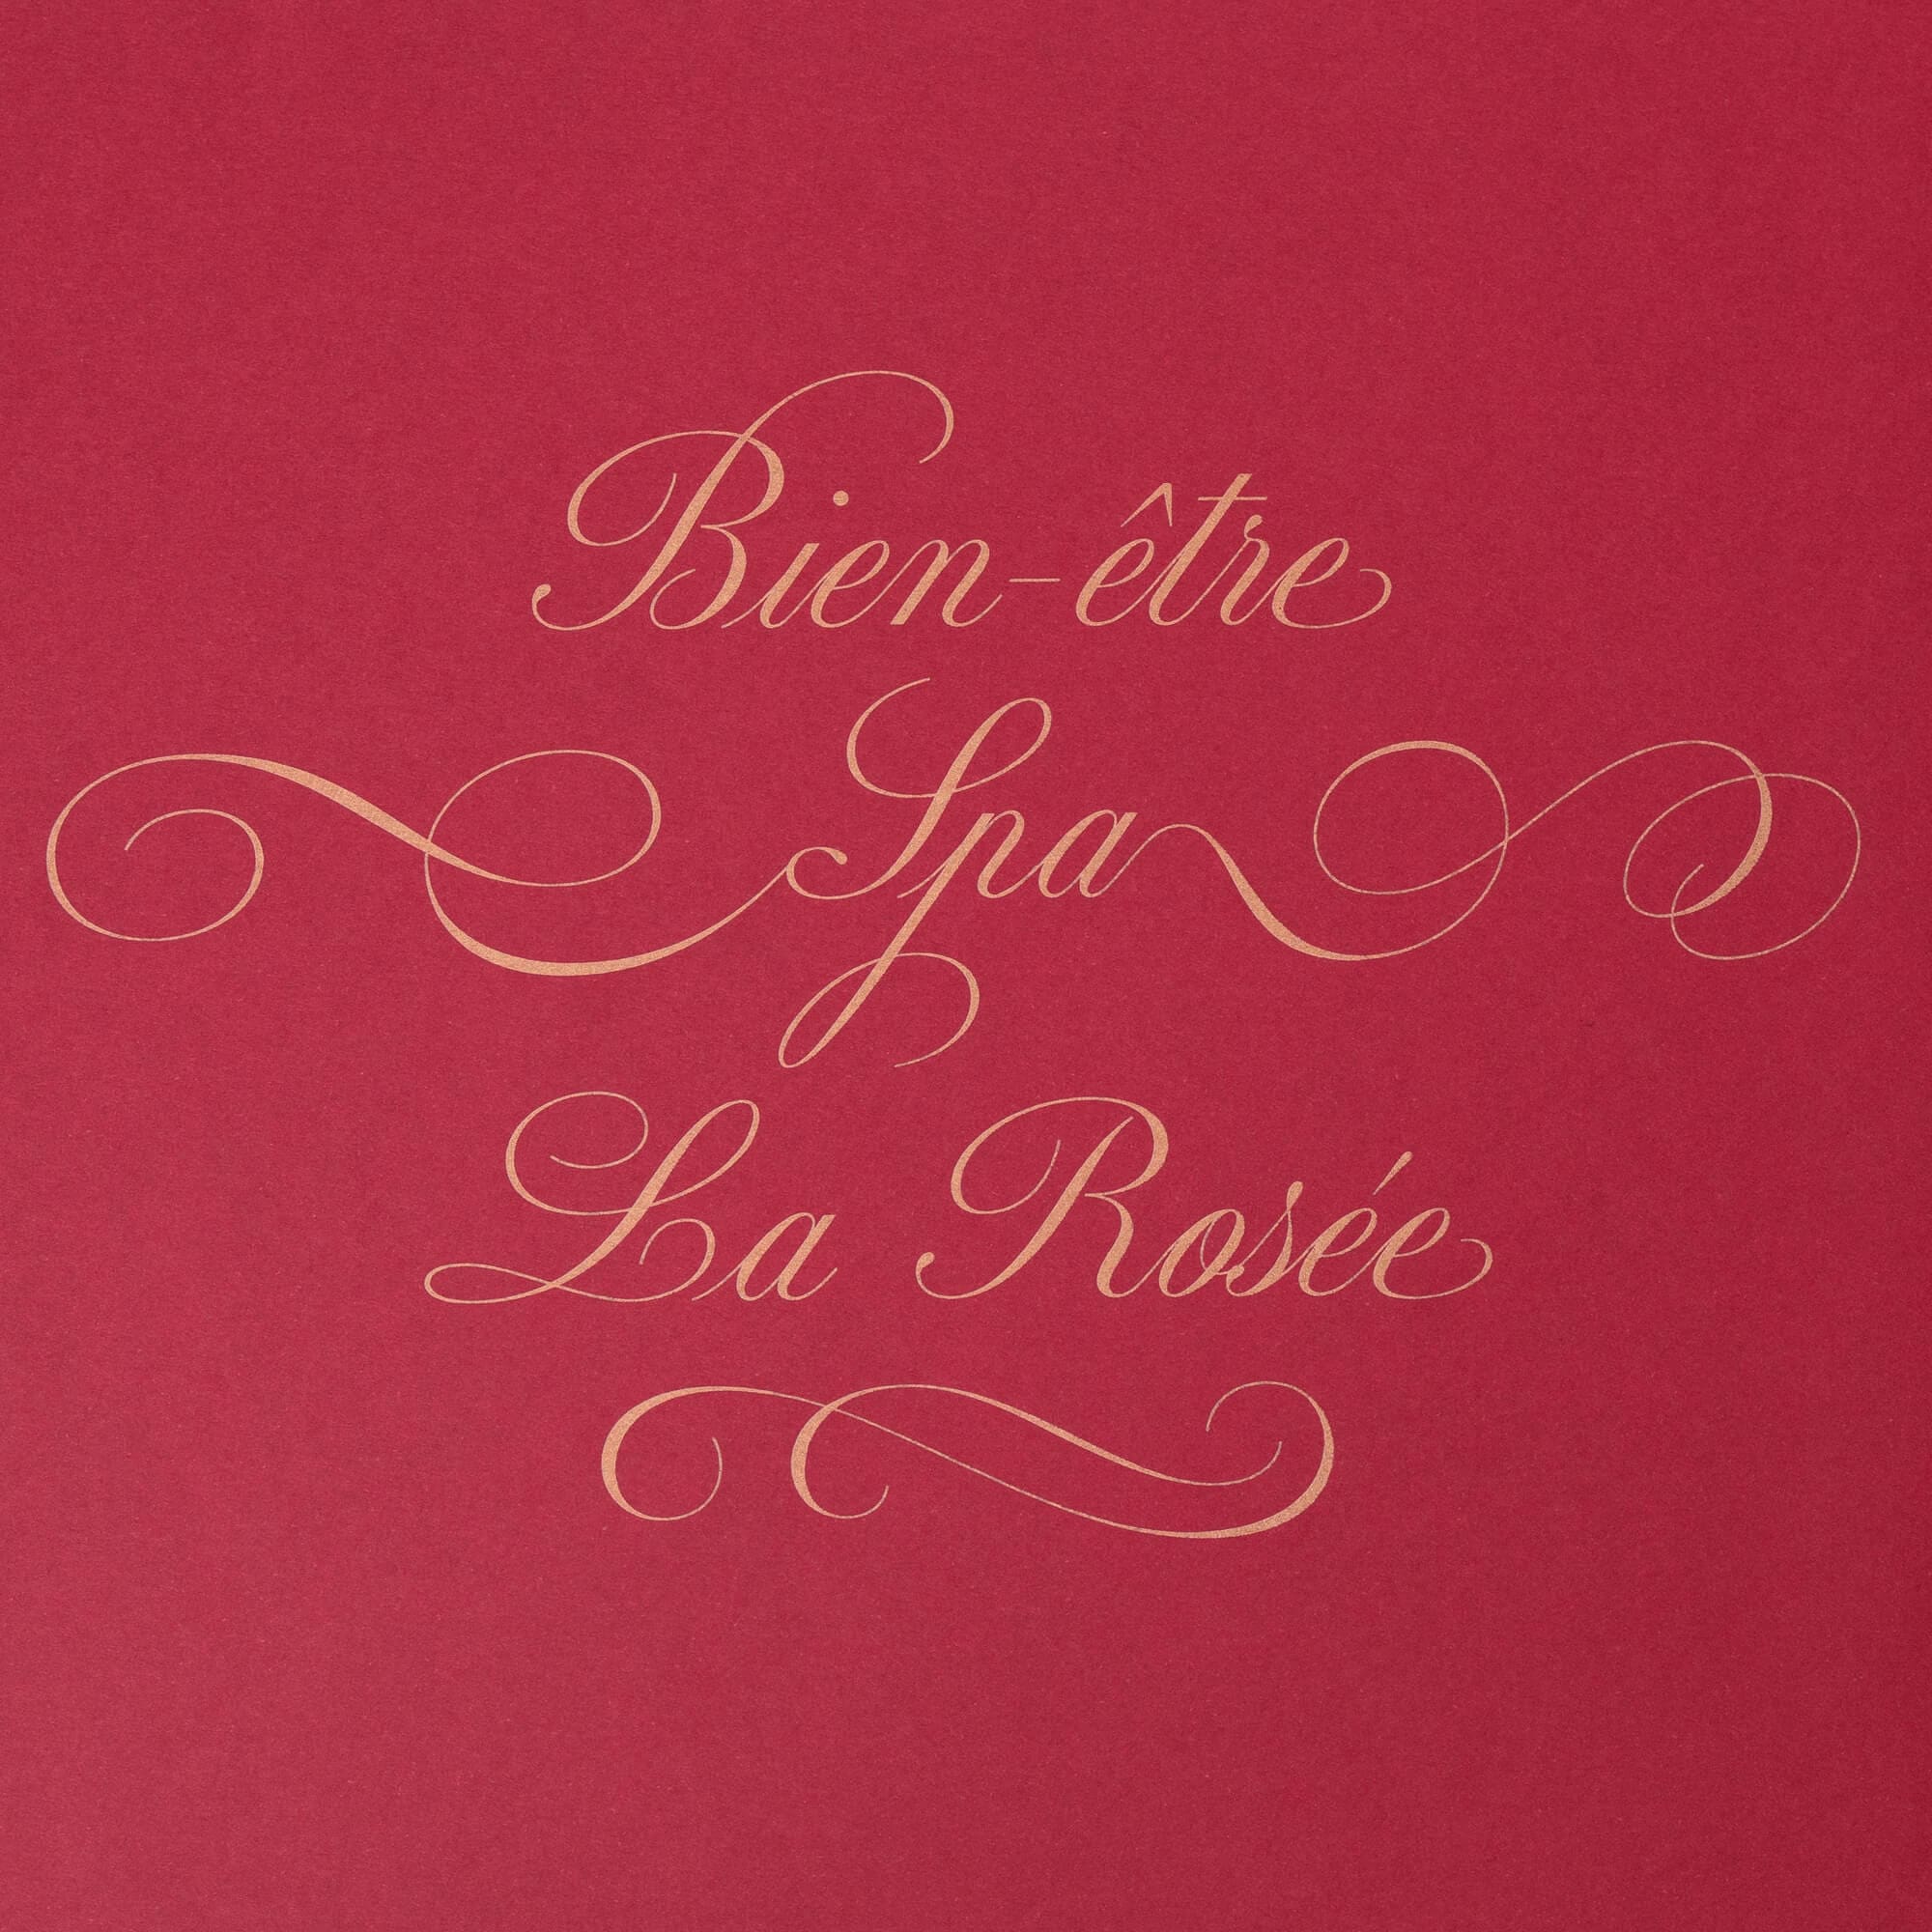 bien être spa la rosée: composition typographique signé IchetKar pour le room book du château Louise de la Vallière, favorite du roi louis XIV